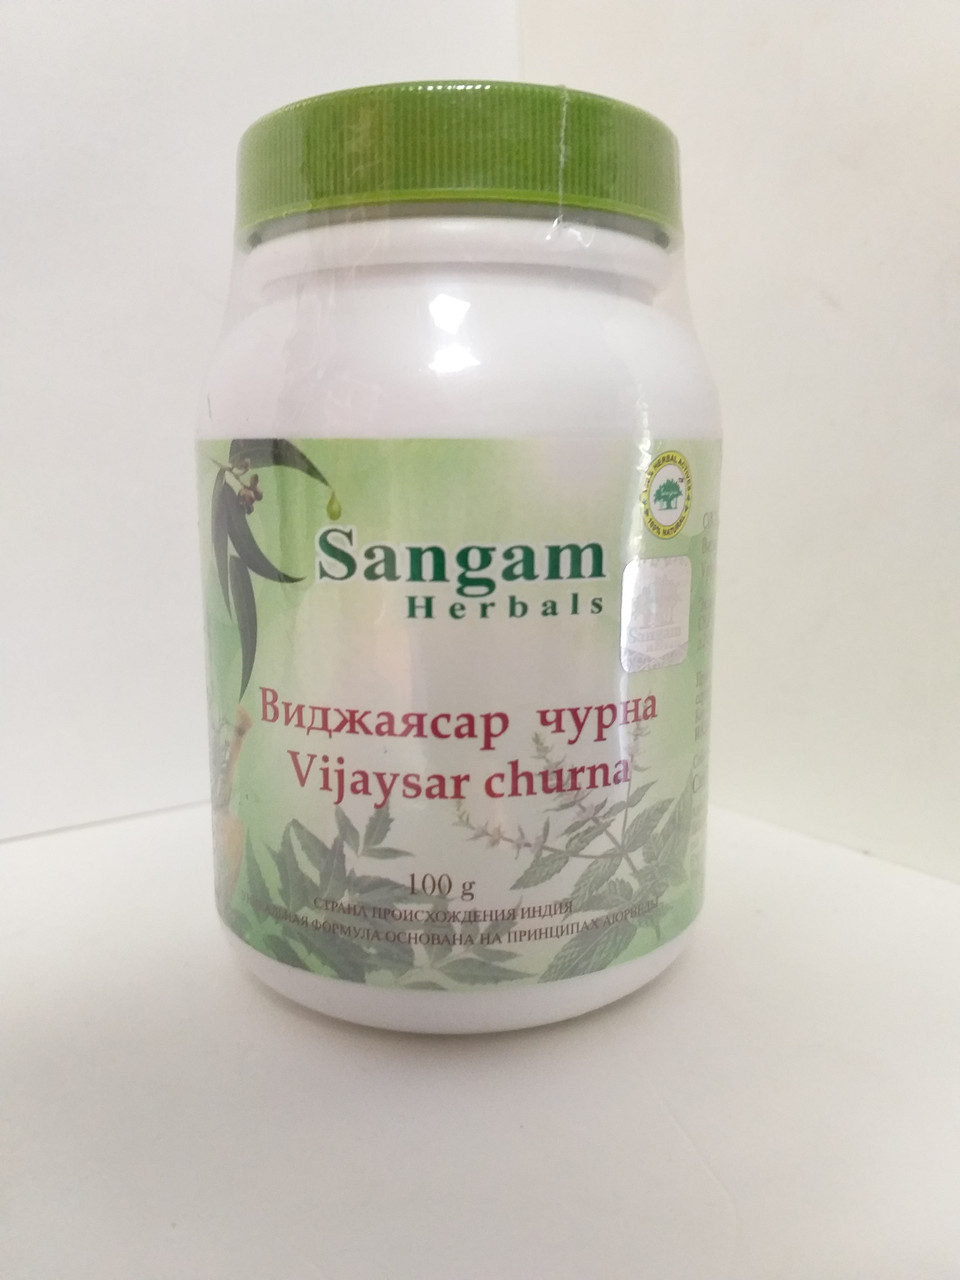 Виджаясар чурна, 100 гр, Сангам, Vijaysar churna